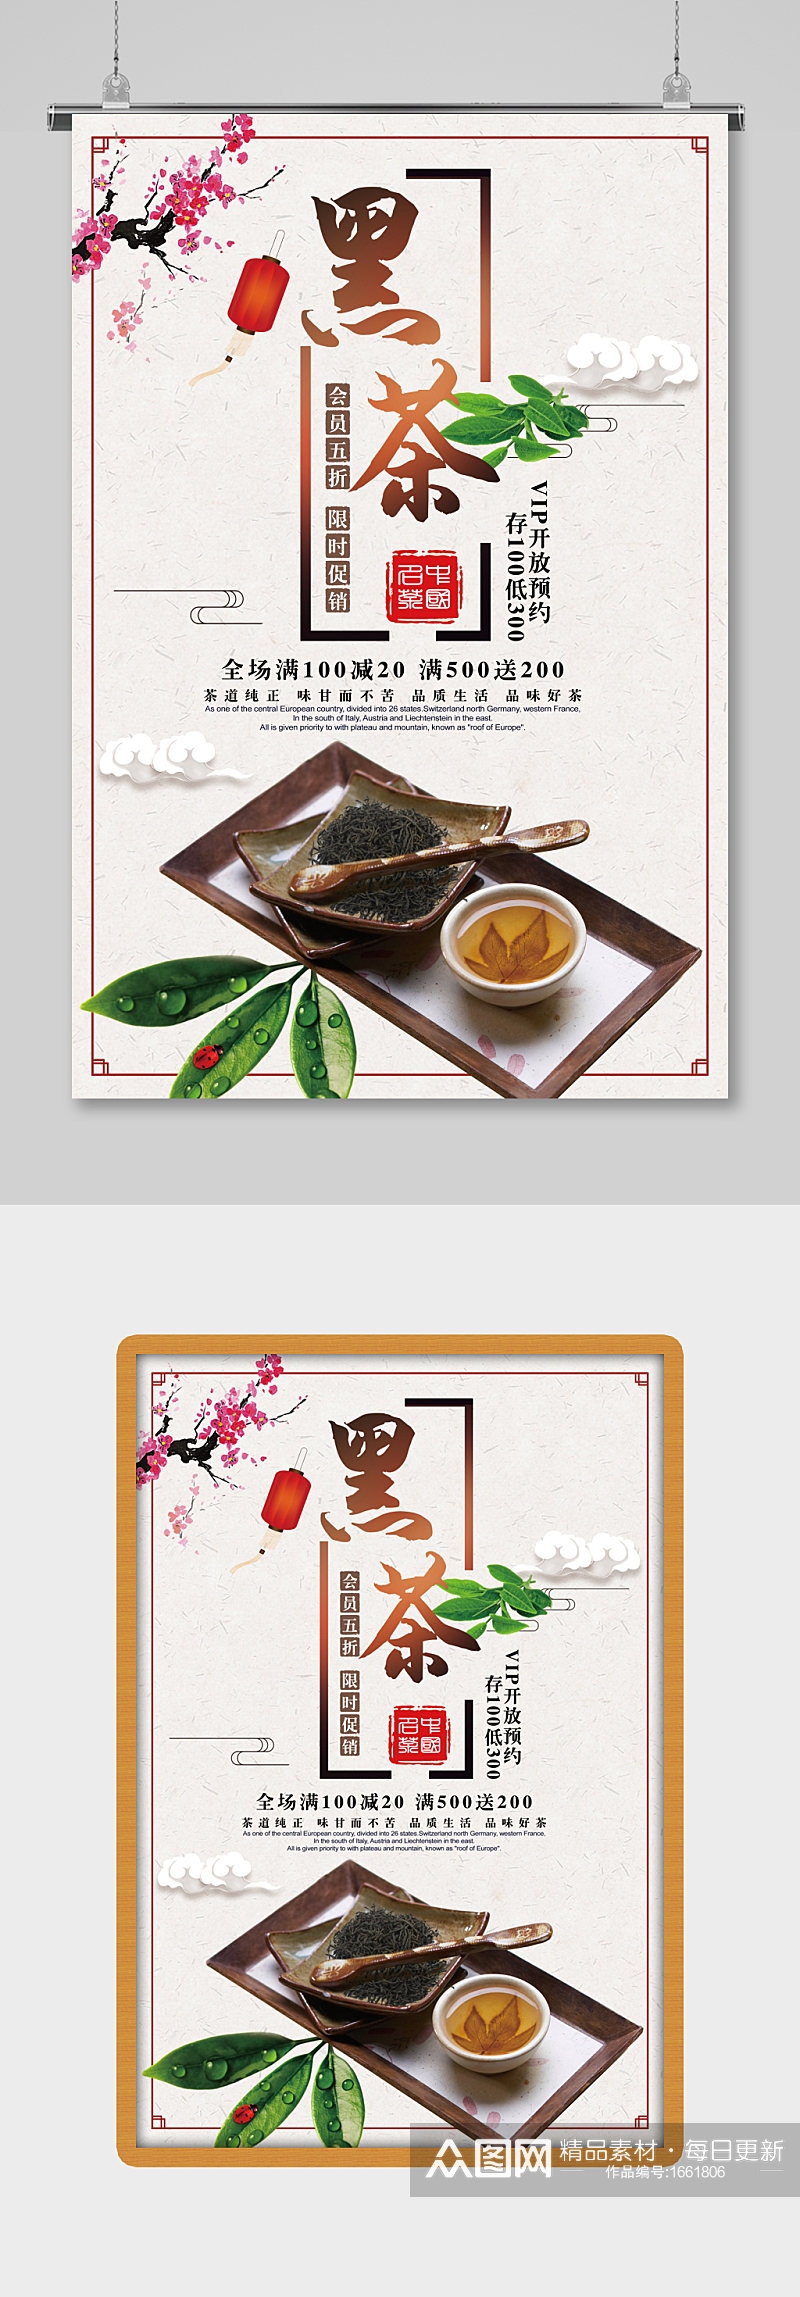 中国风黑茶文化宣传海报素材